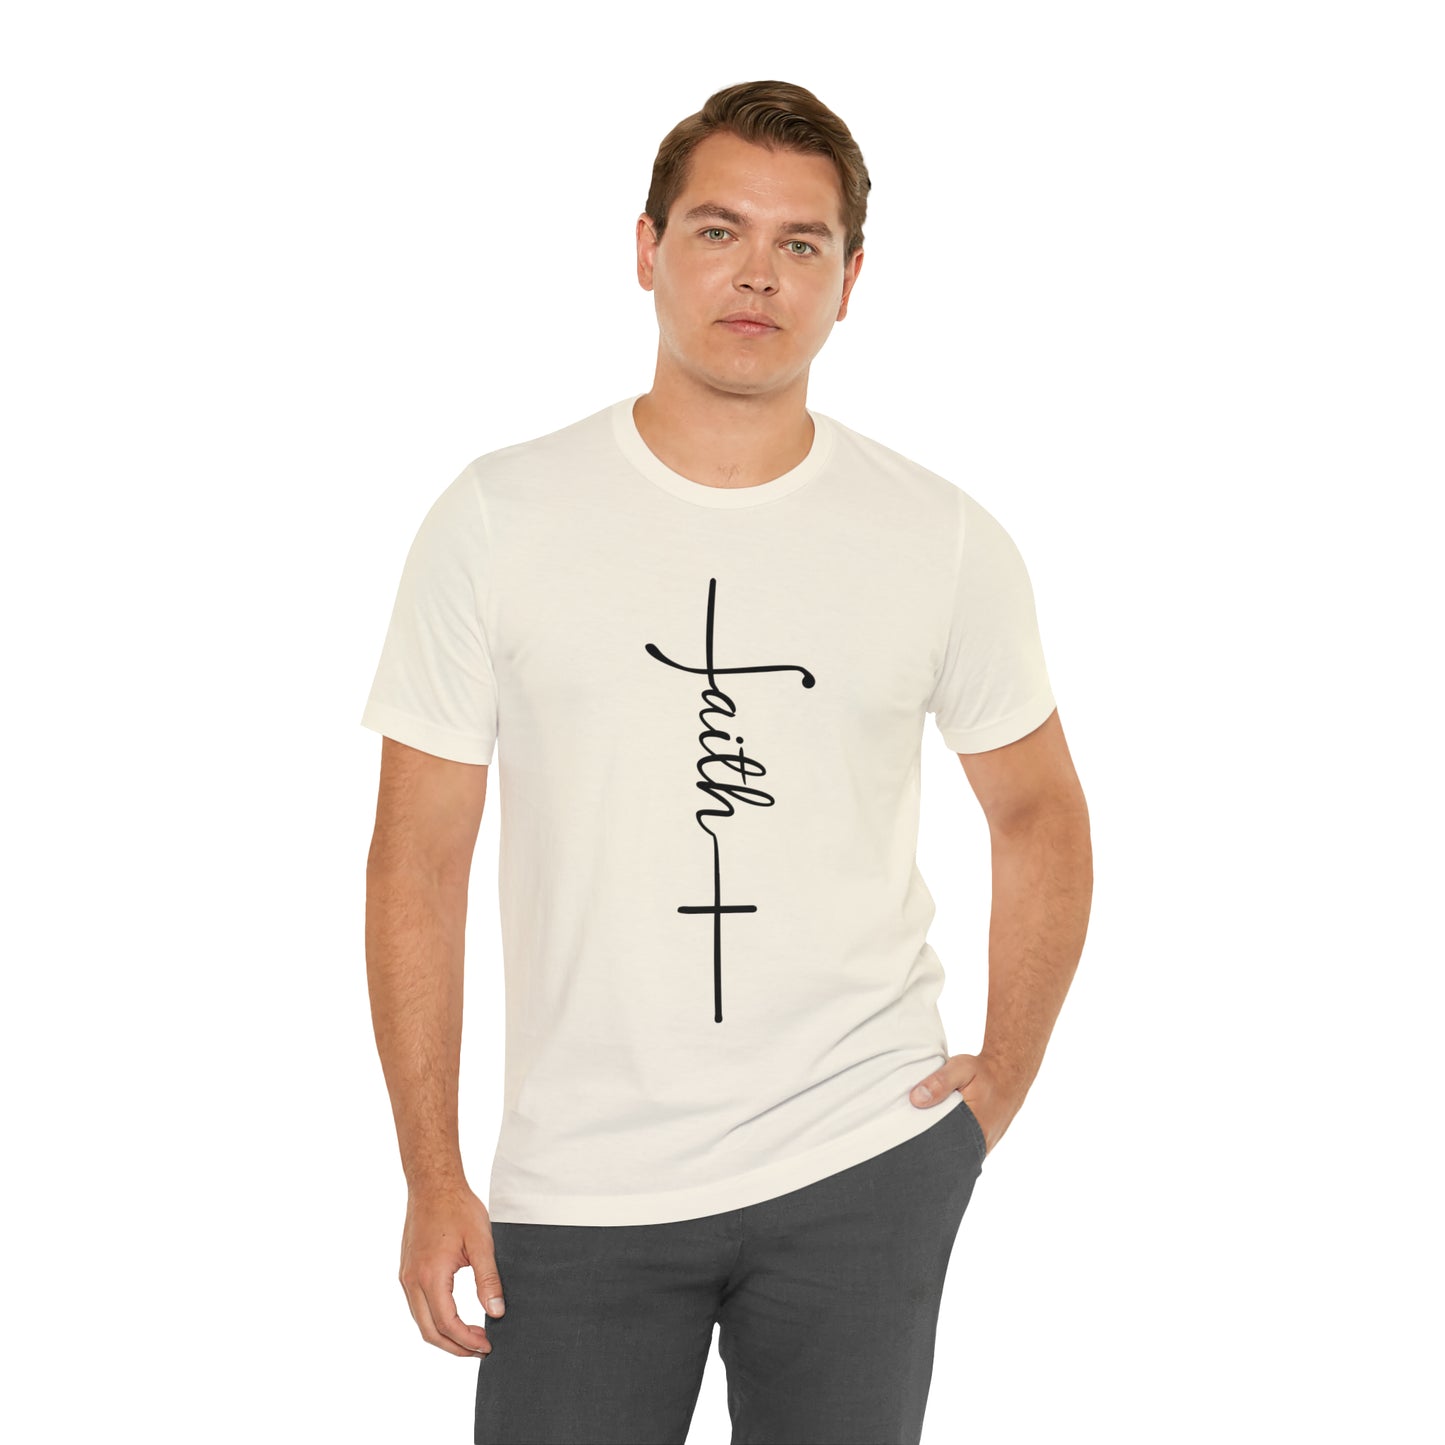 Cursive Faith with Cross Tee - Black Font